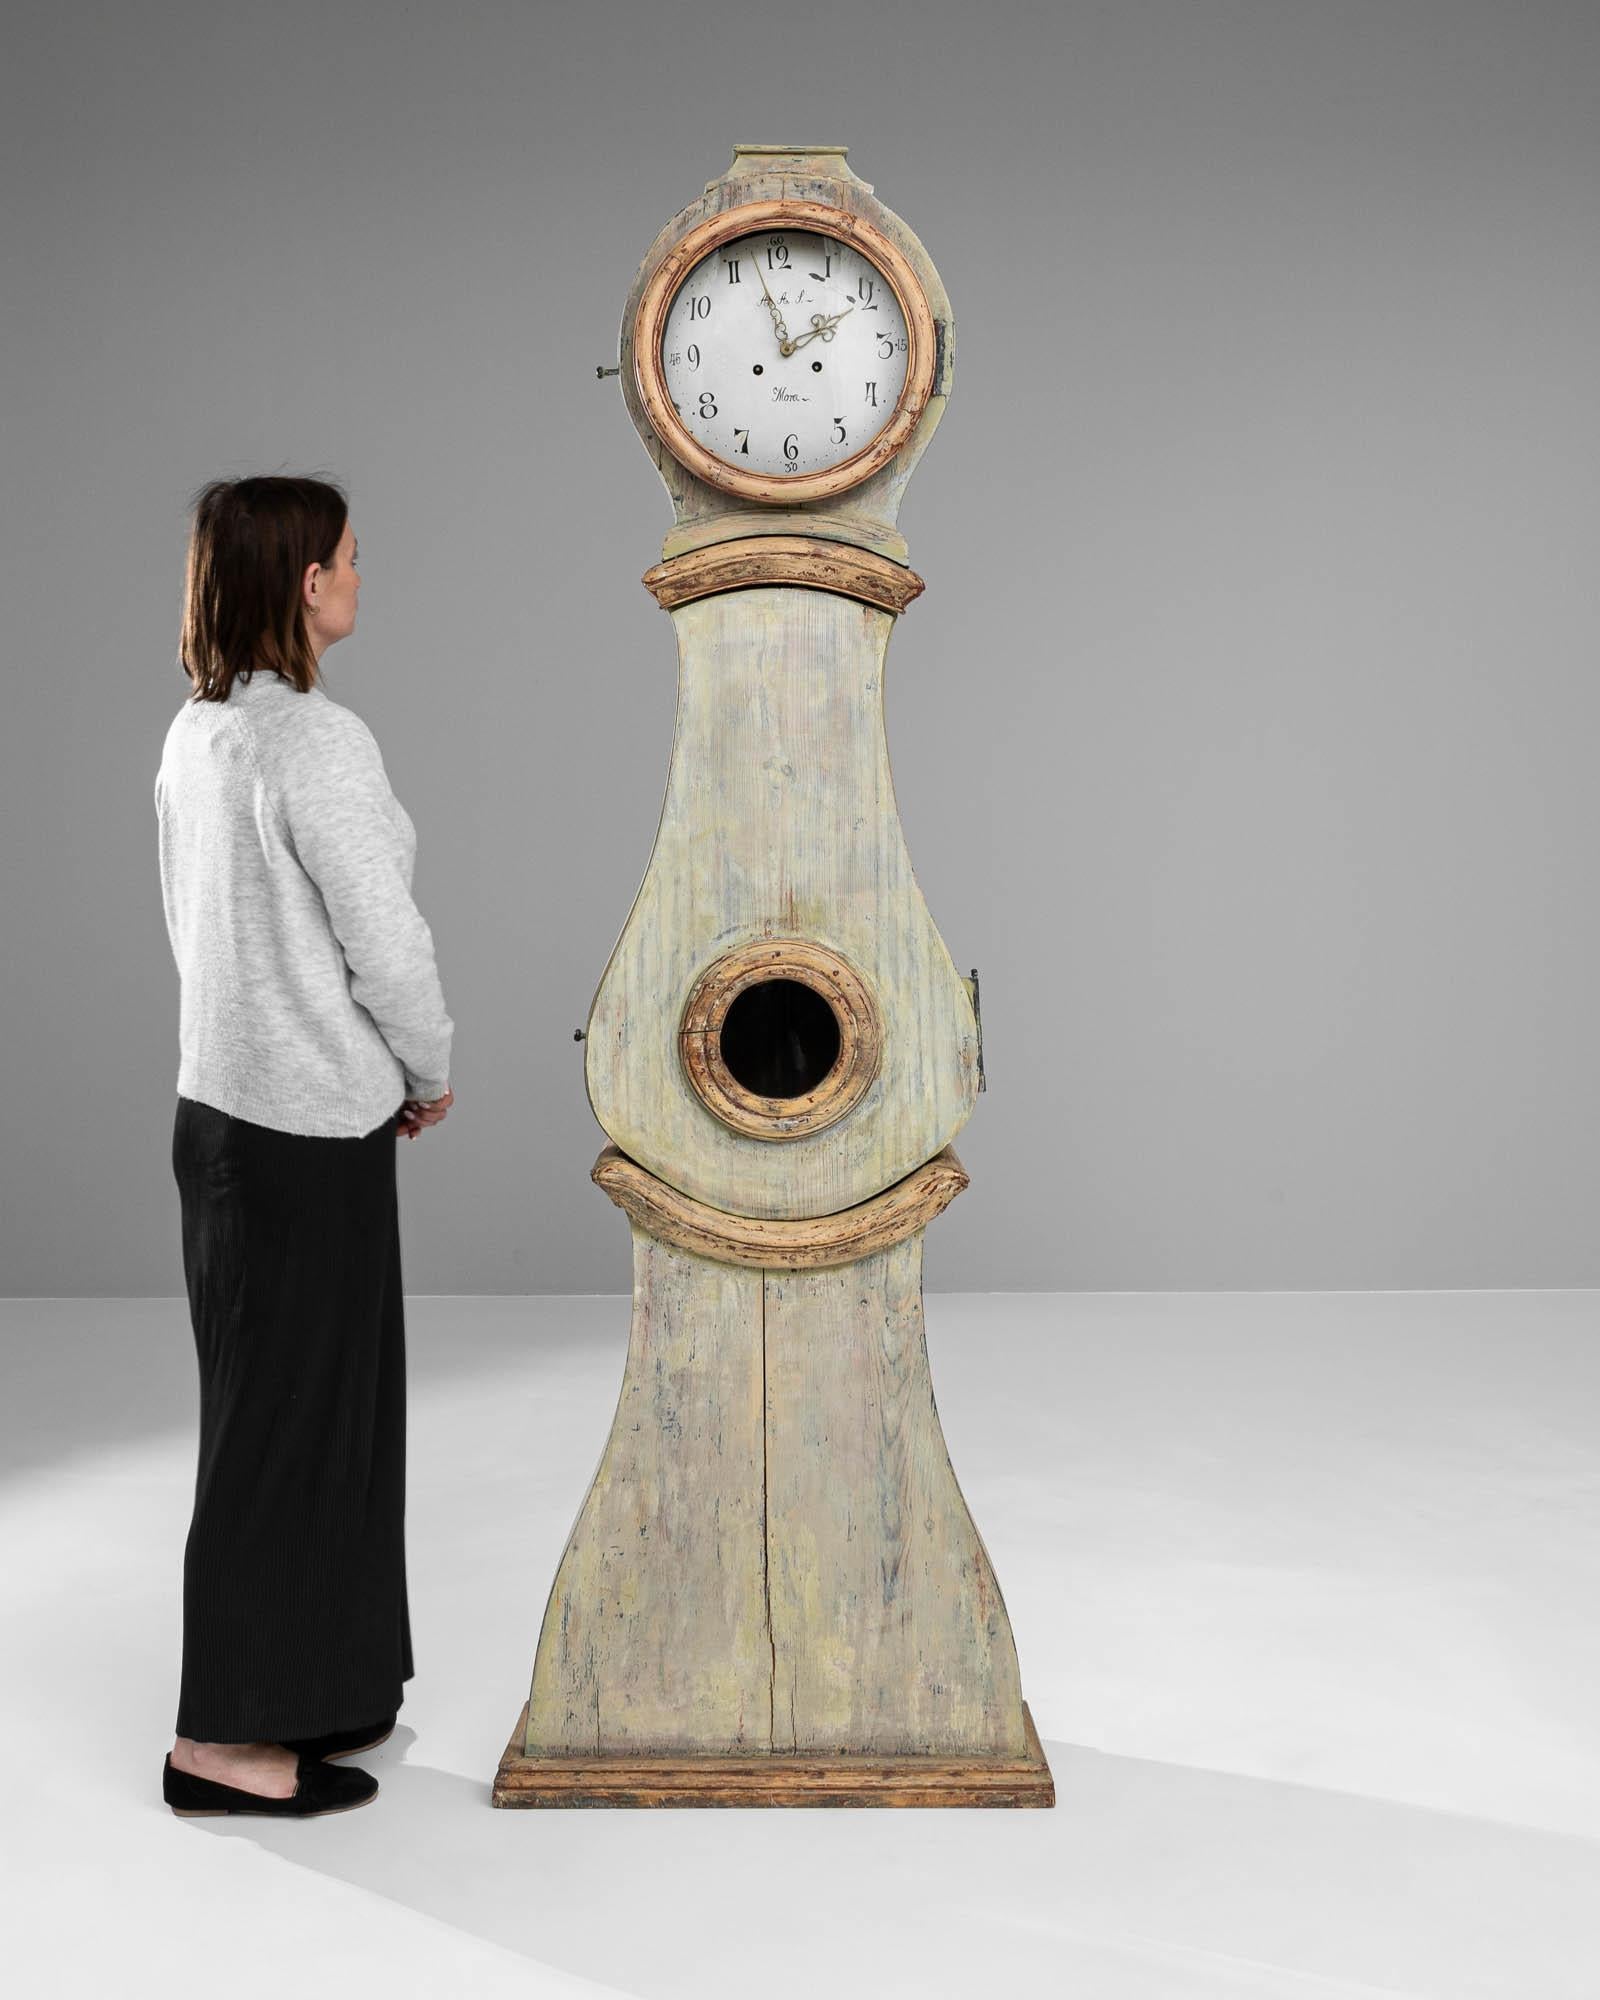 Cette horloge en bois suédoise du début du XIXe siècle témoigne de l'élégance durable du design scandinave. Son corps haut et élancé est façonné dans un bois qui porte la douce patine du temps, sa surface étant ornée des teintes délavées que seules